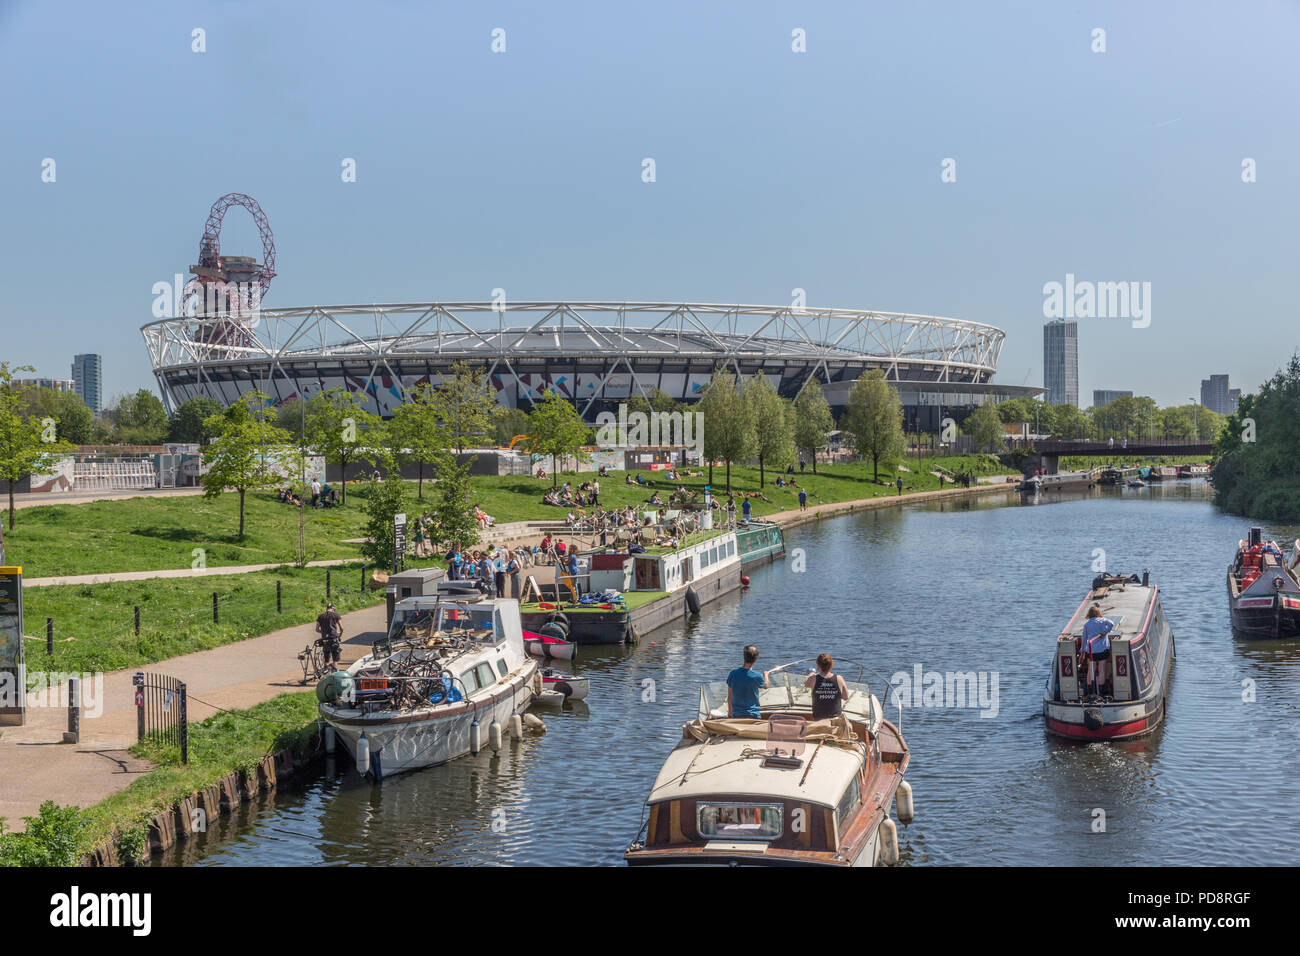 Vue sur le Queen Elizabeth Olympic Park et stade de Londres à partir de la rivière Lea, London, Londres, Angleterre, Royaume-Uni, Europe 2018 Banque D'Images